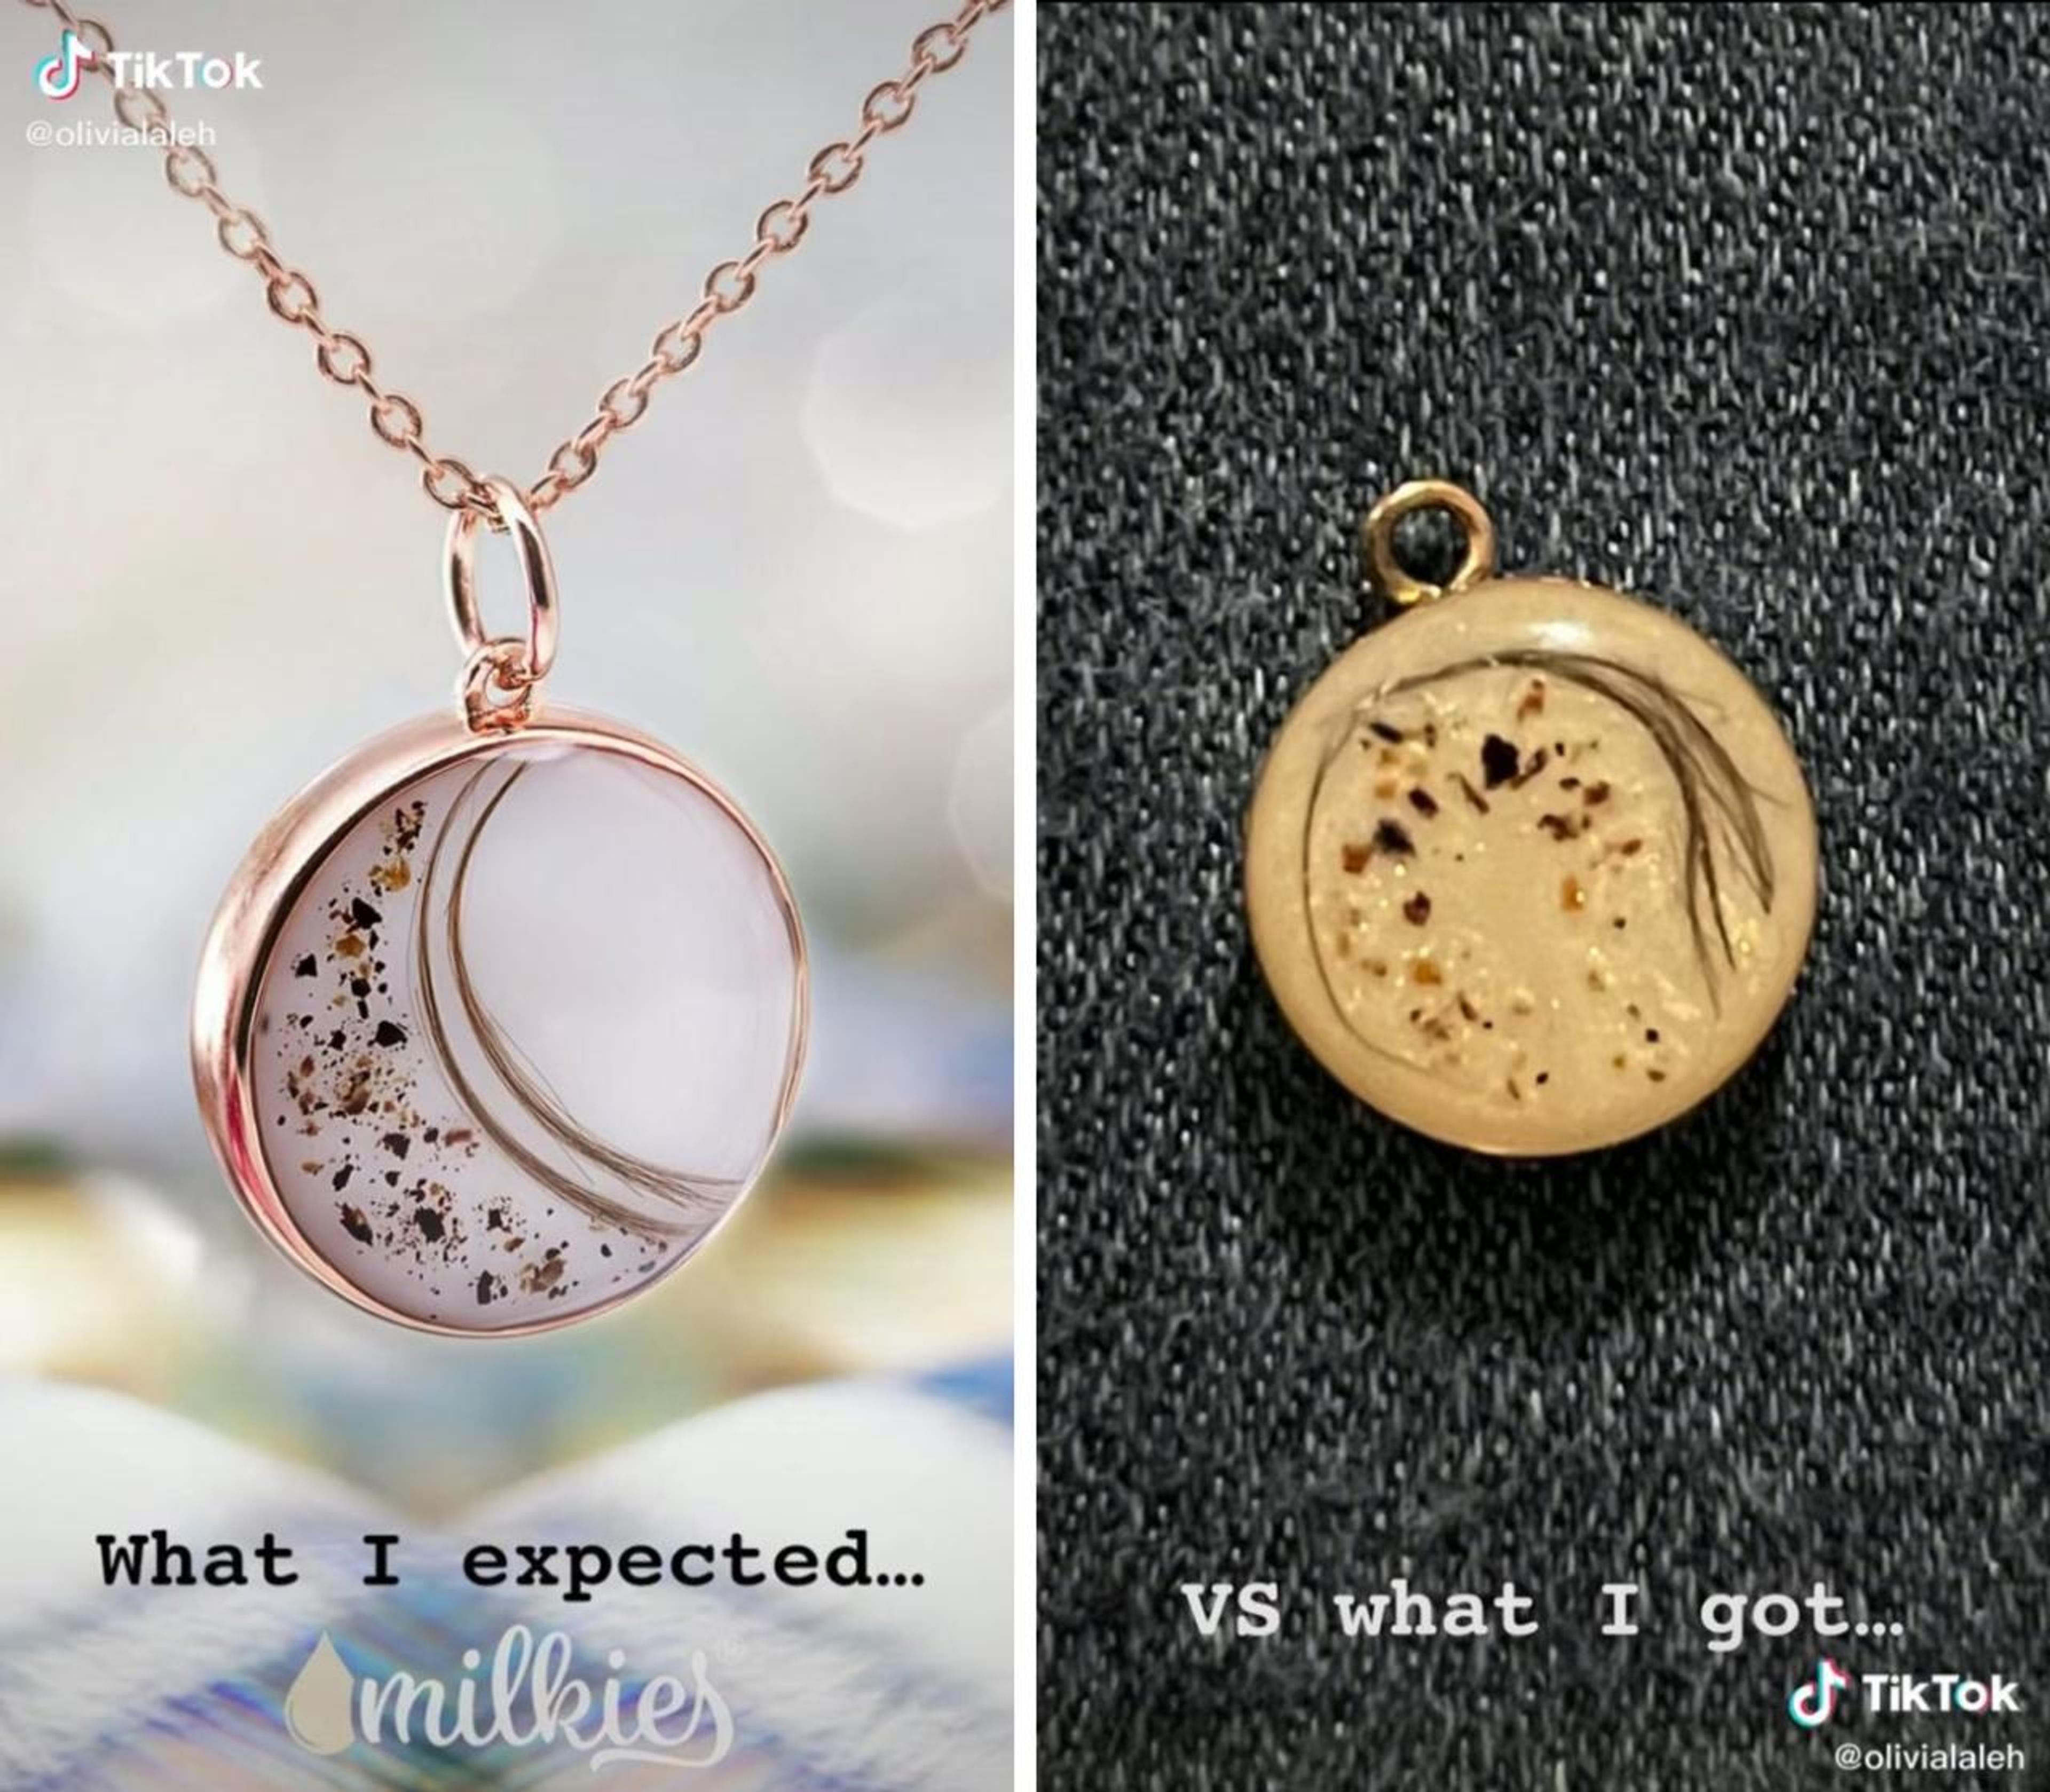 Breastmilk Jewelry Expectation vs. Reality, @olivialaleh, TikTok, 2022